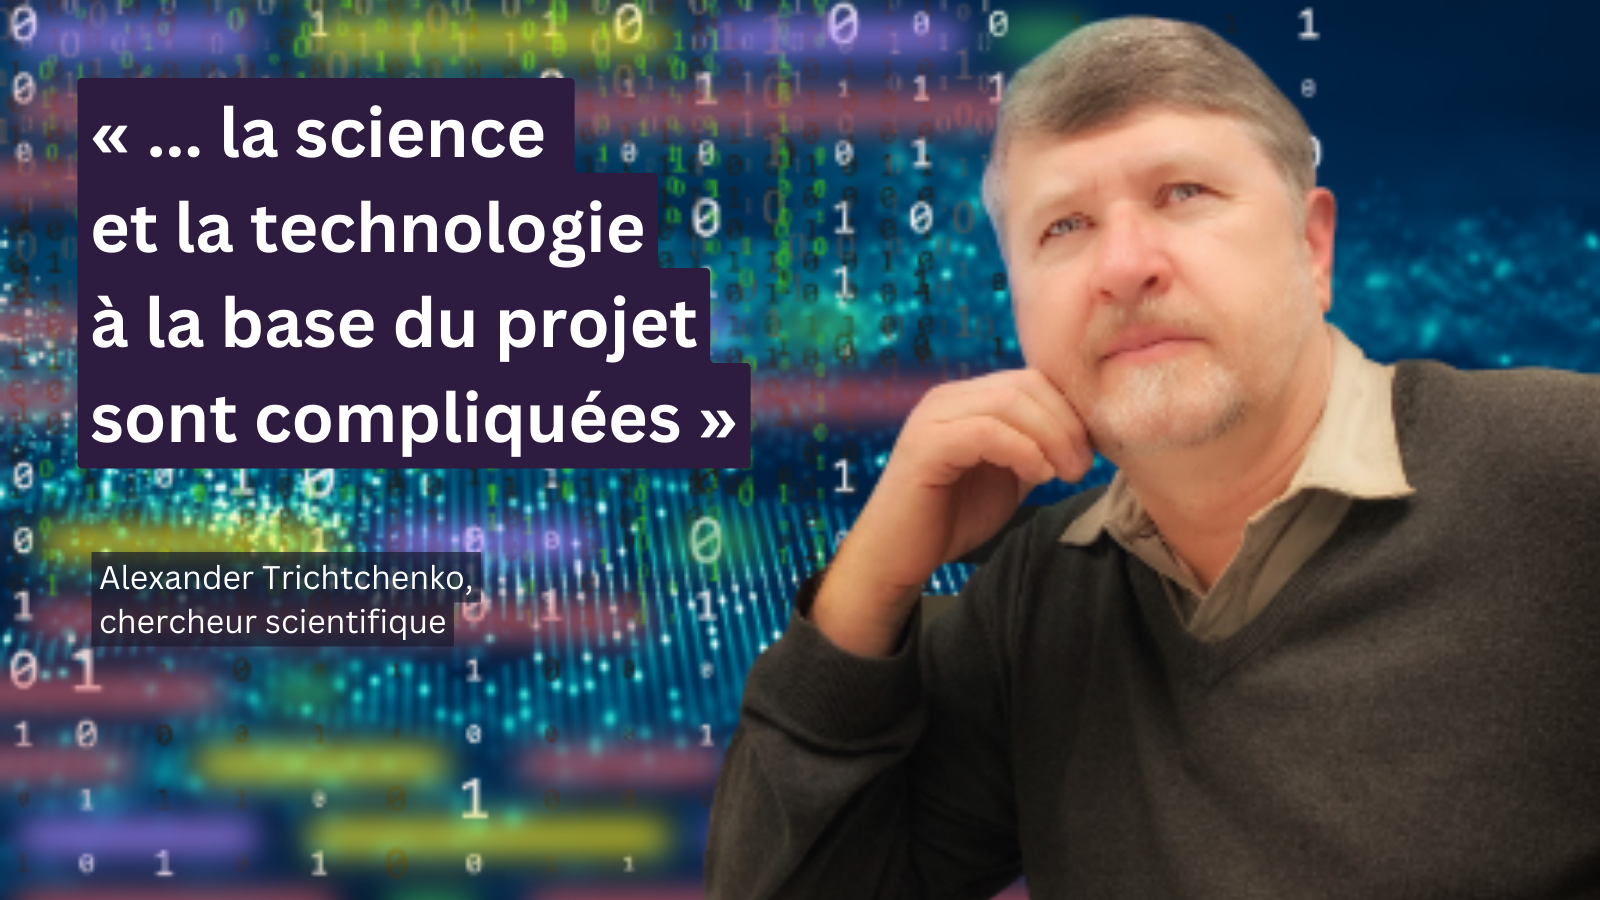 Portrait d’Alexander Trichtchenko avec texte à l'écran : « ... la science et la technologie à la base du projet sont compliquées »